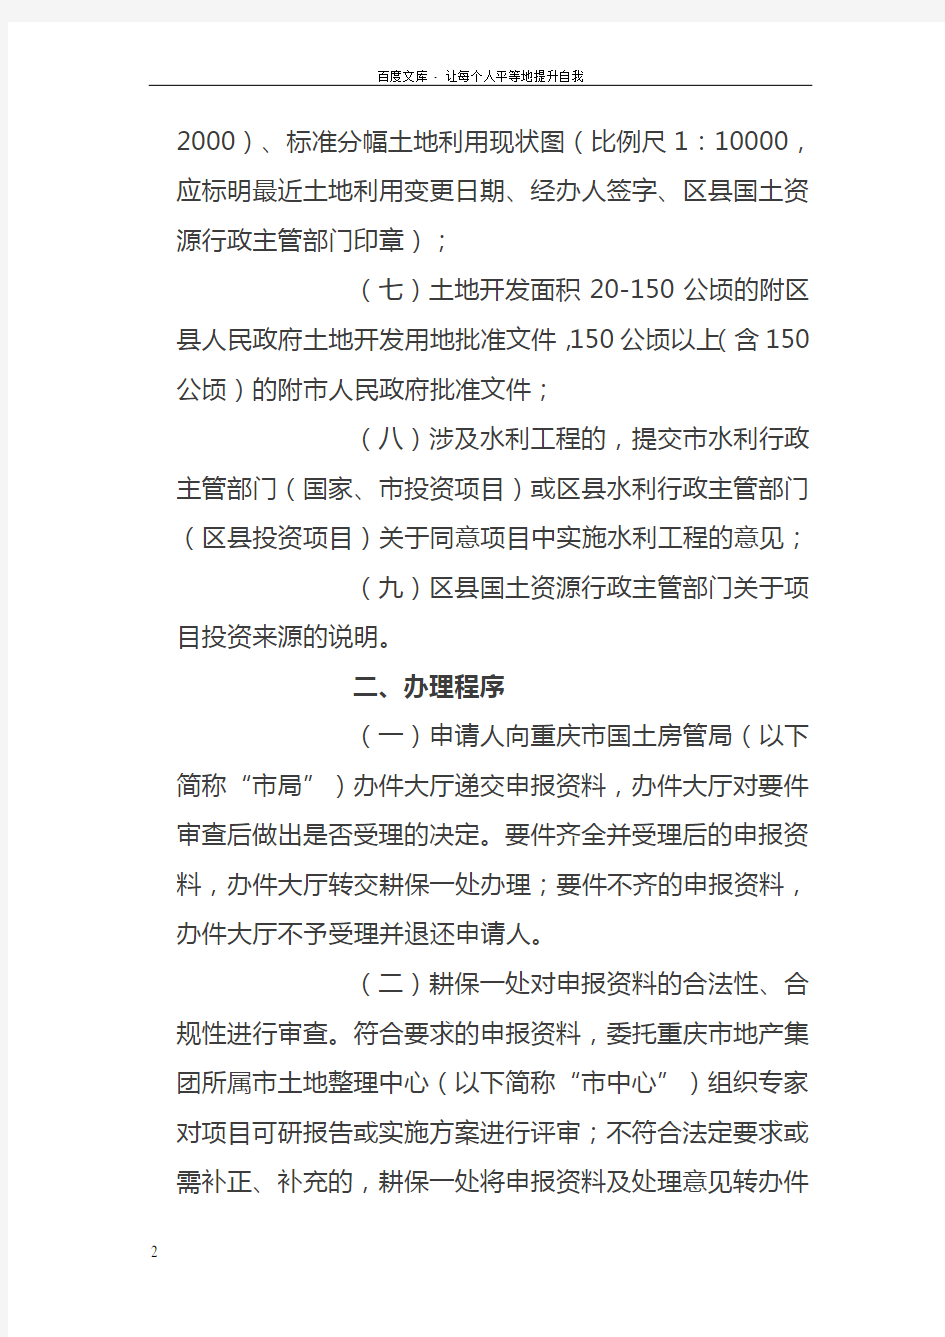 重庆市土地开发整理管理工作办事程序